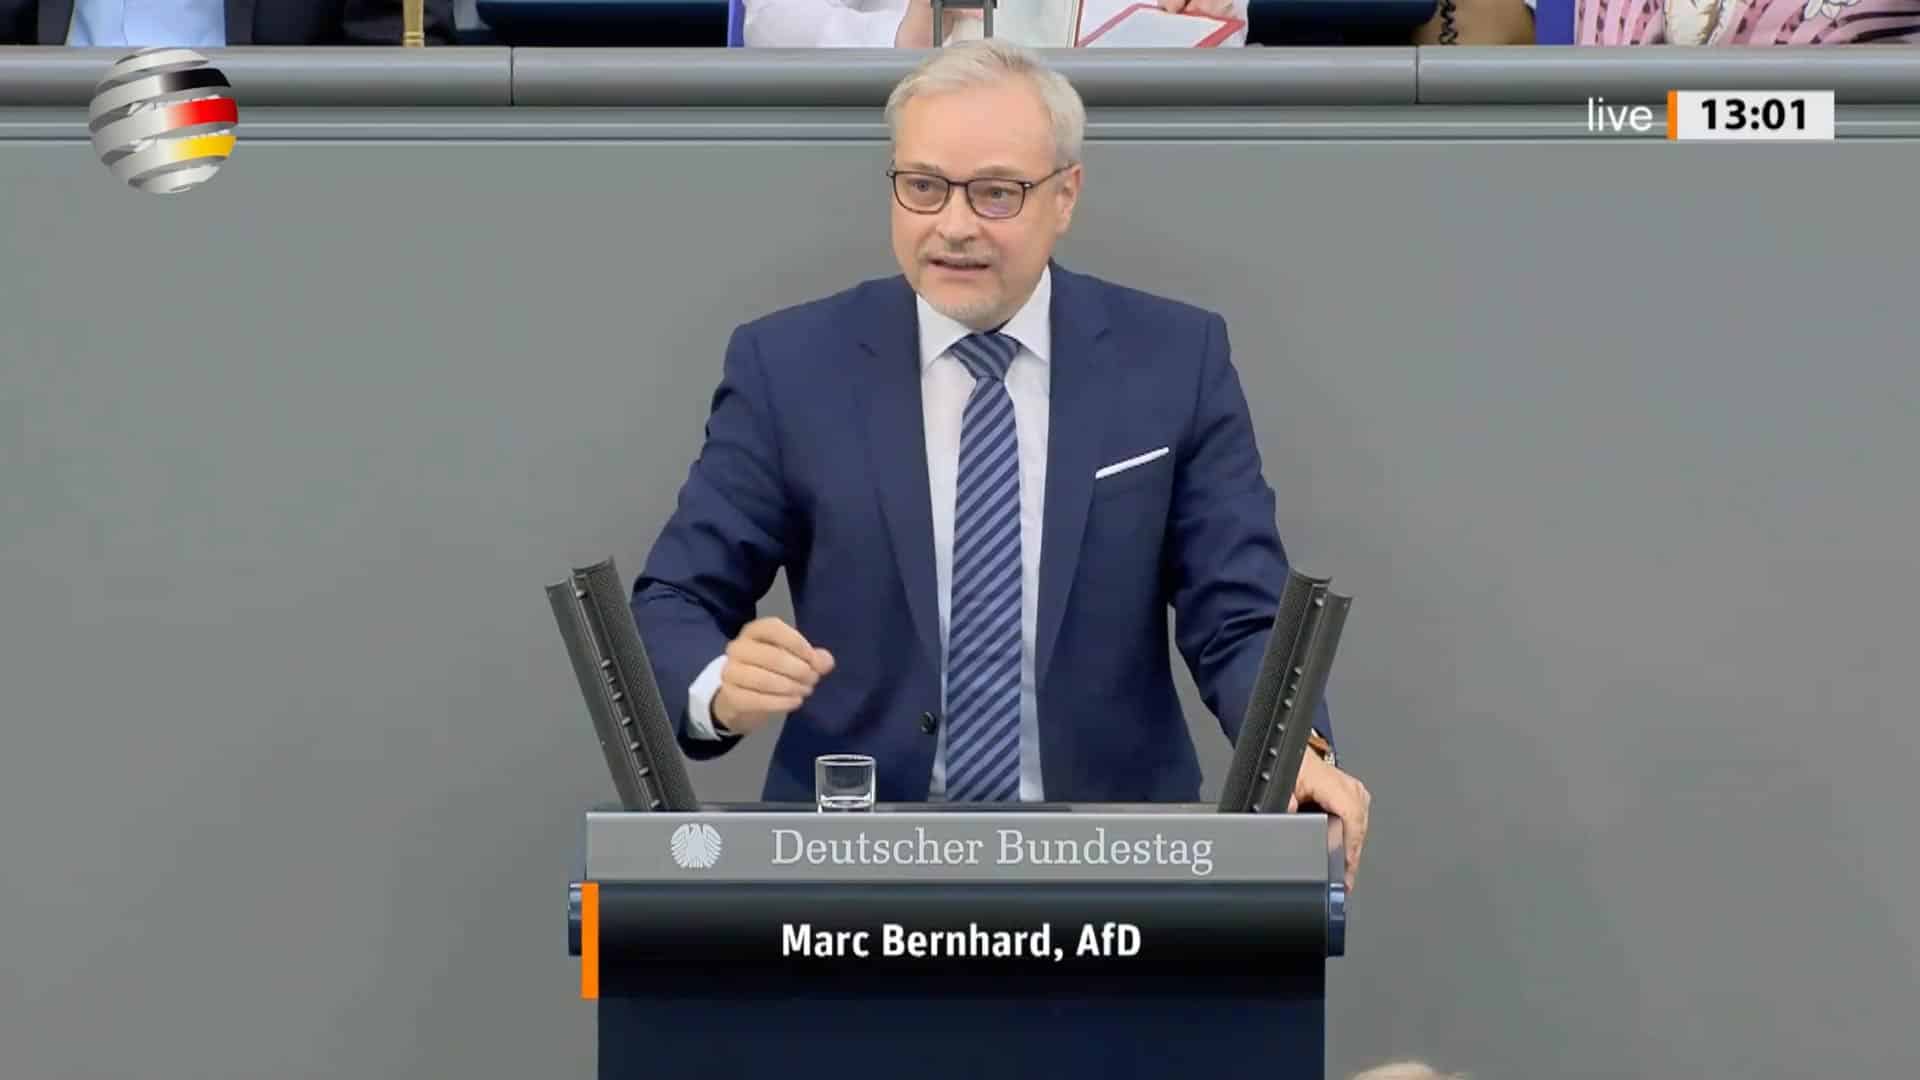 marc-bernhard-(afd):-„heizungsgesetz-ist-ein-leitfaden-zur-zerstoerung-unseres-wohlstands!